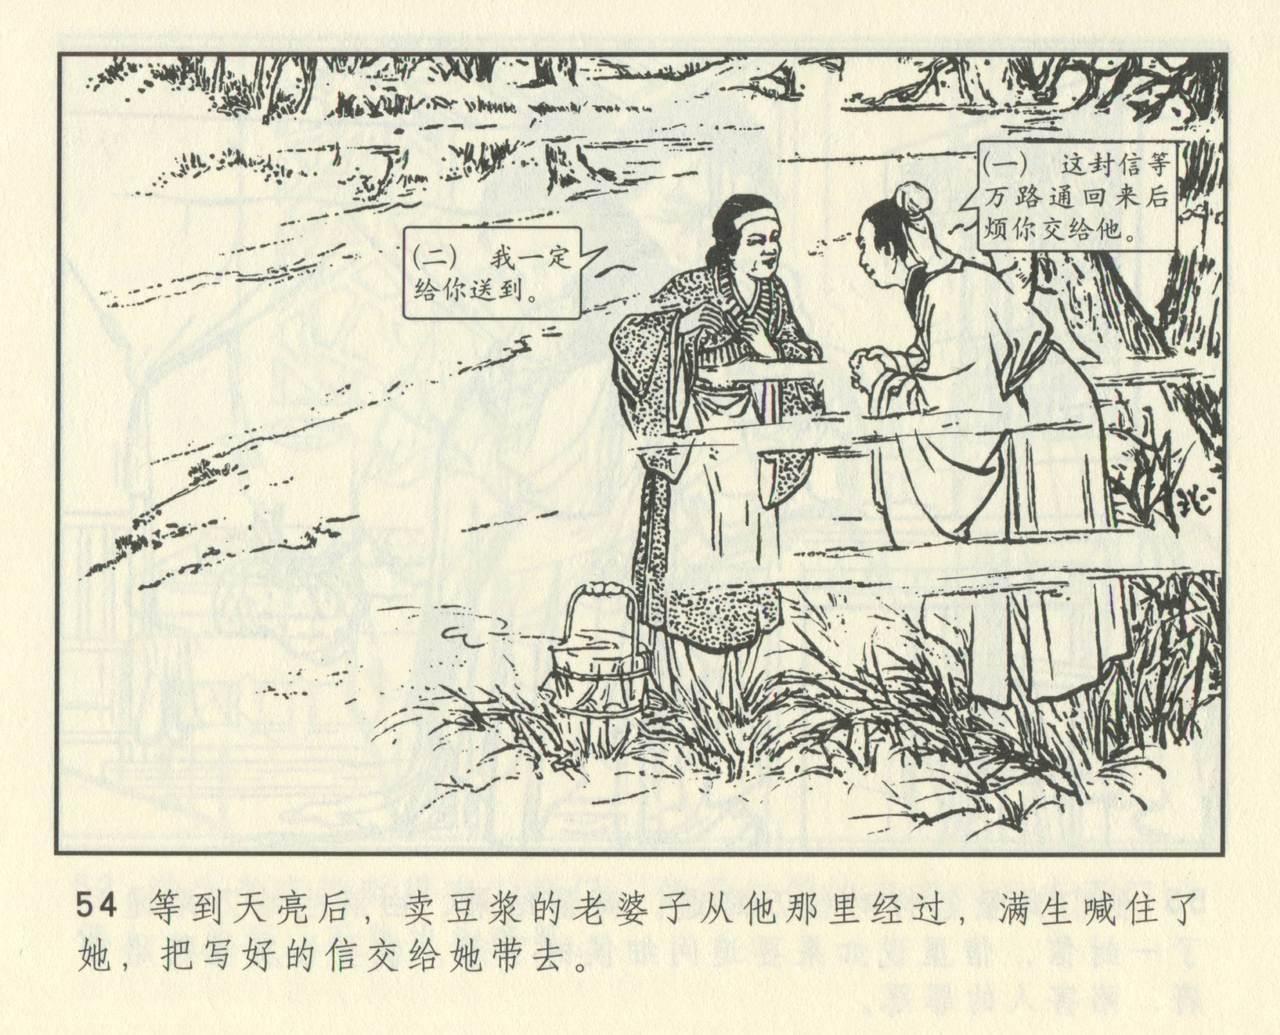 聊斋志异 张玮等绘 天津人民美术出版社 卷二十一 ~ 三十 465